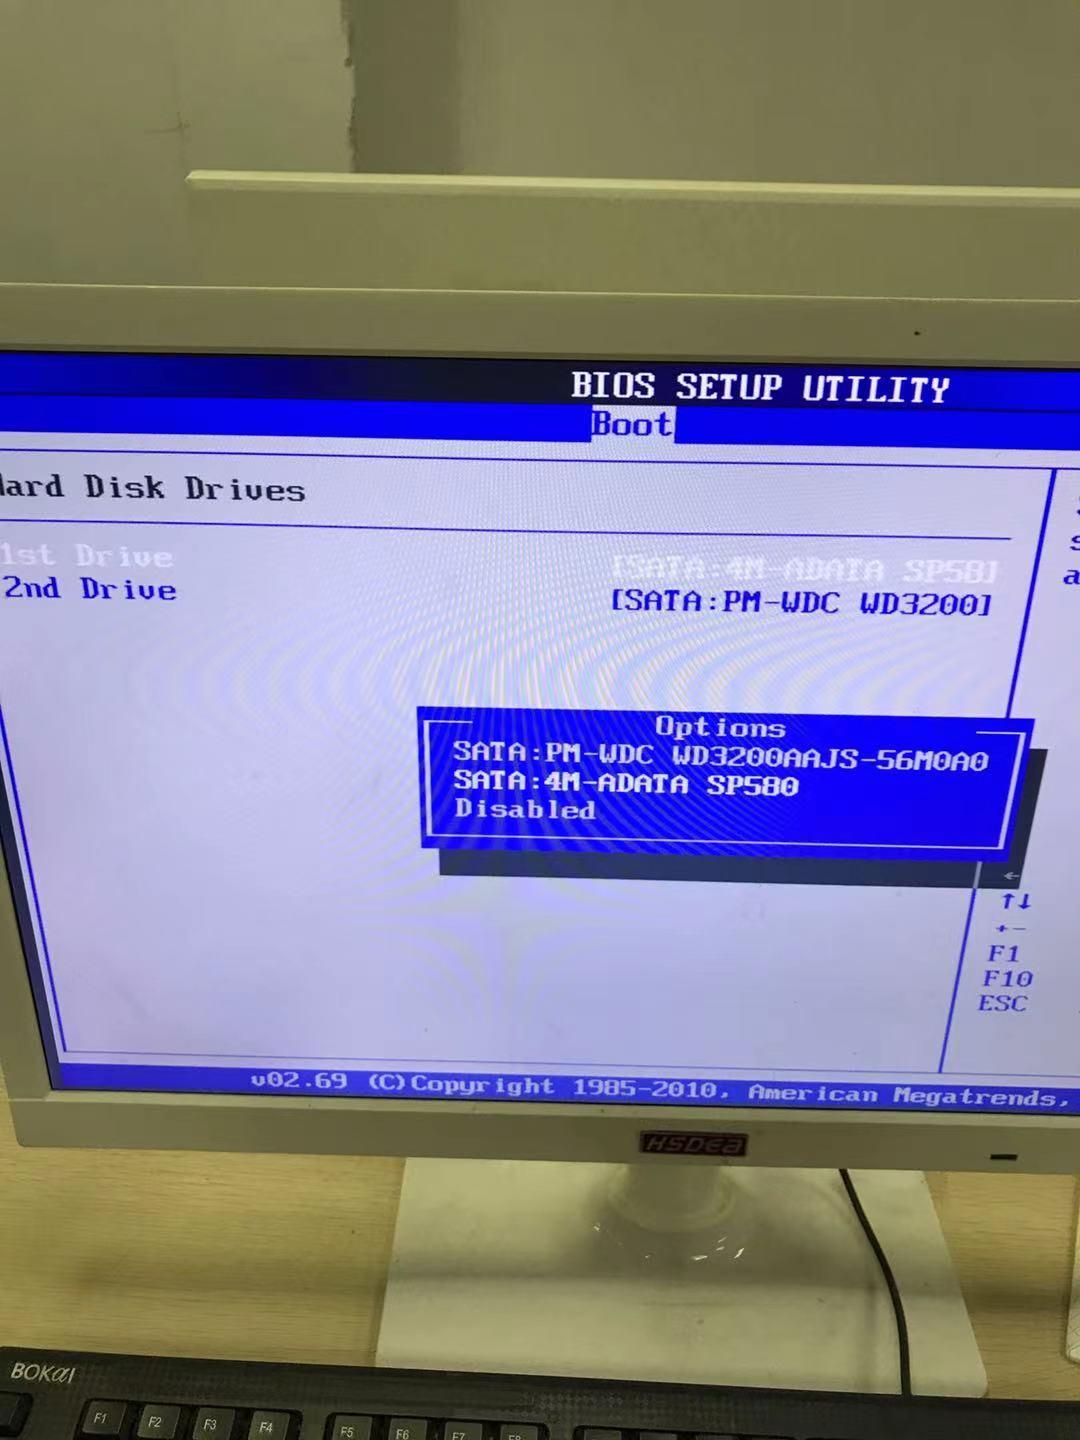 旧电脑加装固态硬盘立马提升速度